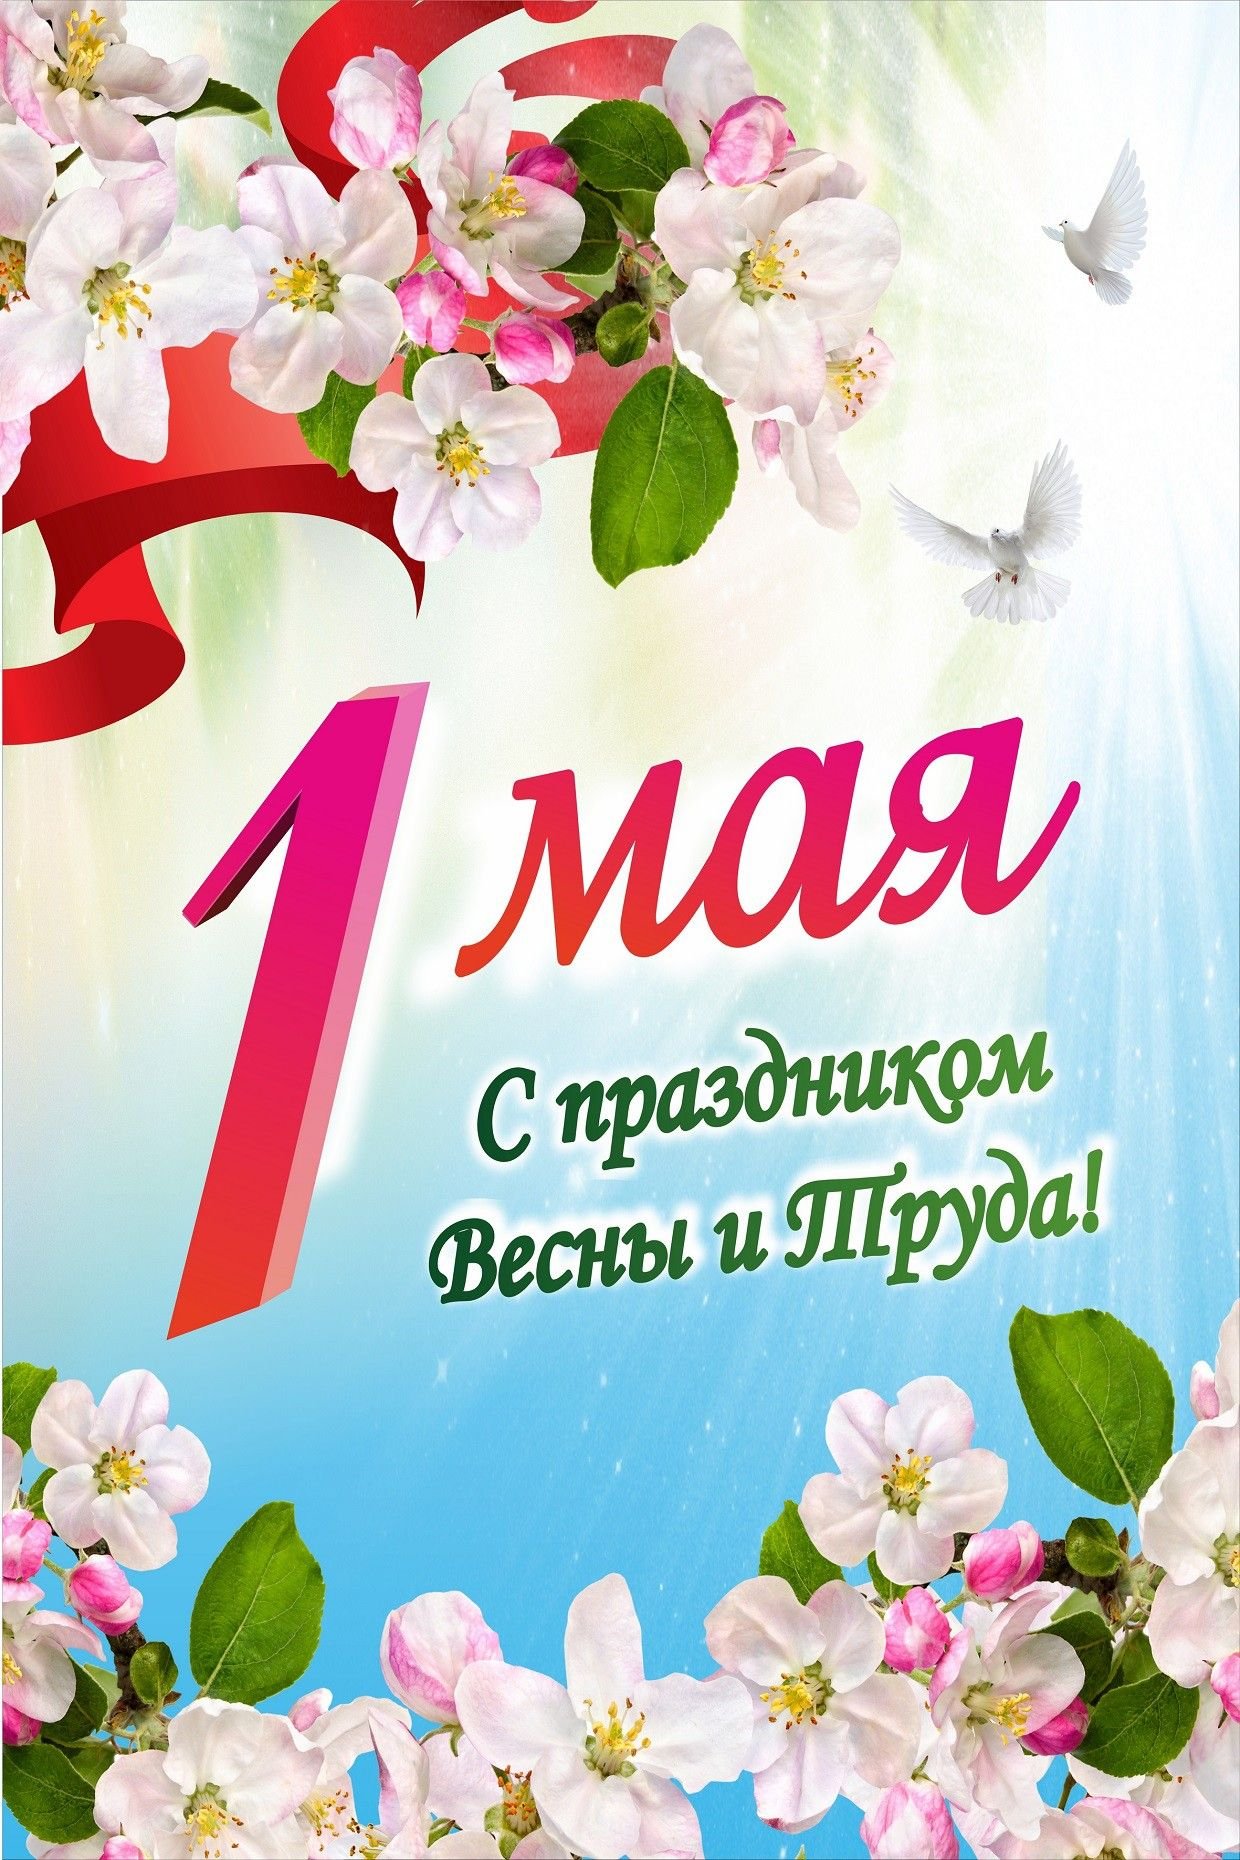 1 мая 52. 1 Мая праздник. 1 Майя. С 1 маем. С праздником первого мая.